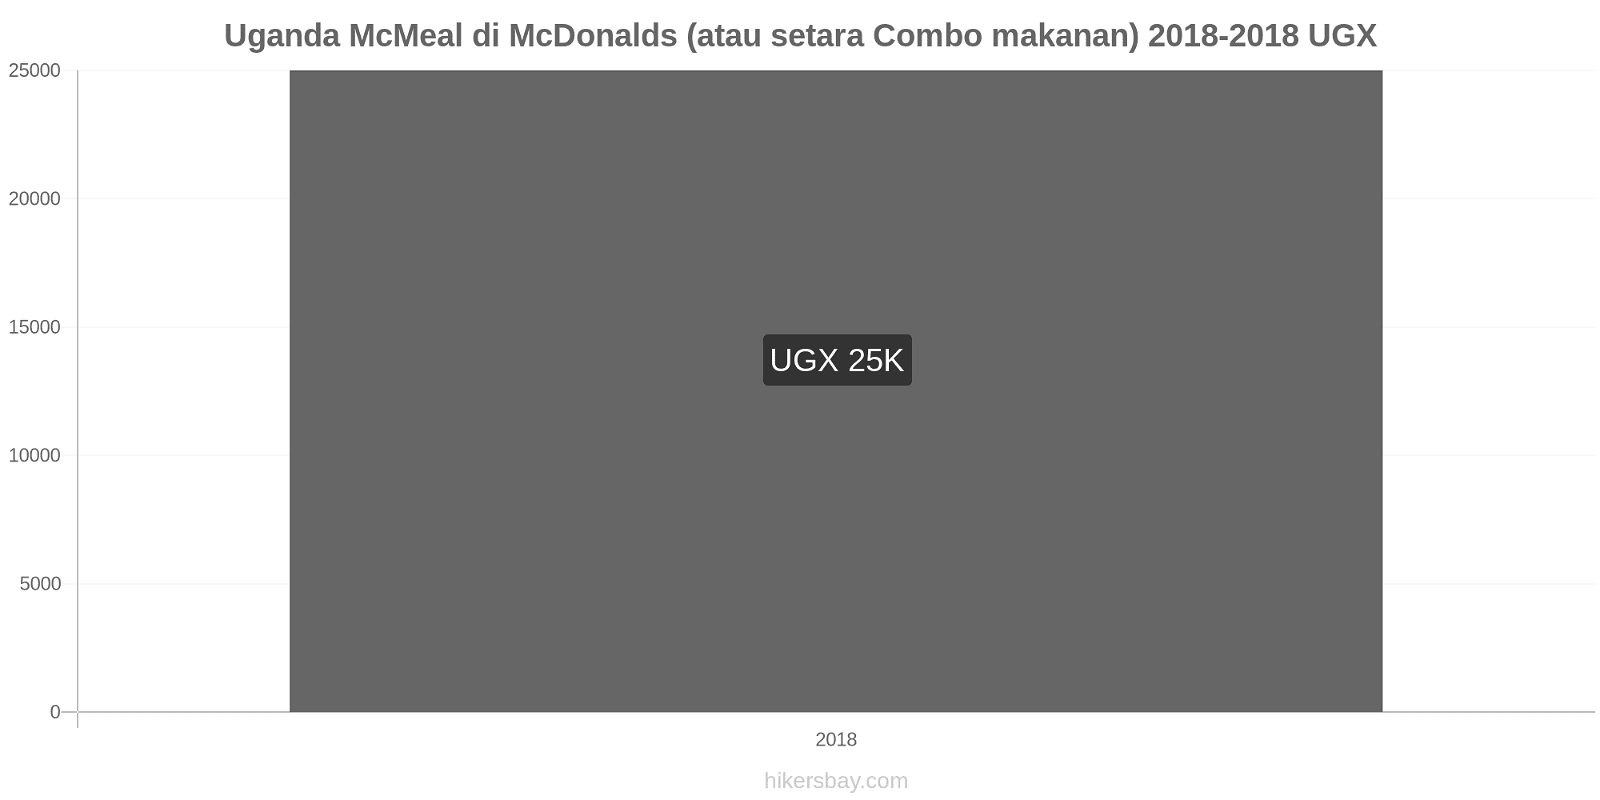 Uganda perubahan harga McMeal di McDonalds (atau setara Combo makanan) hikersbay.com